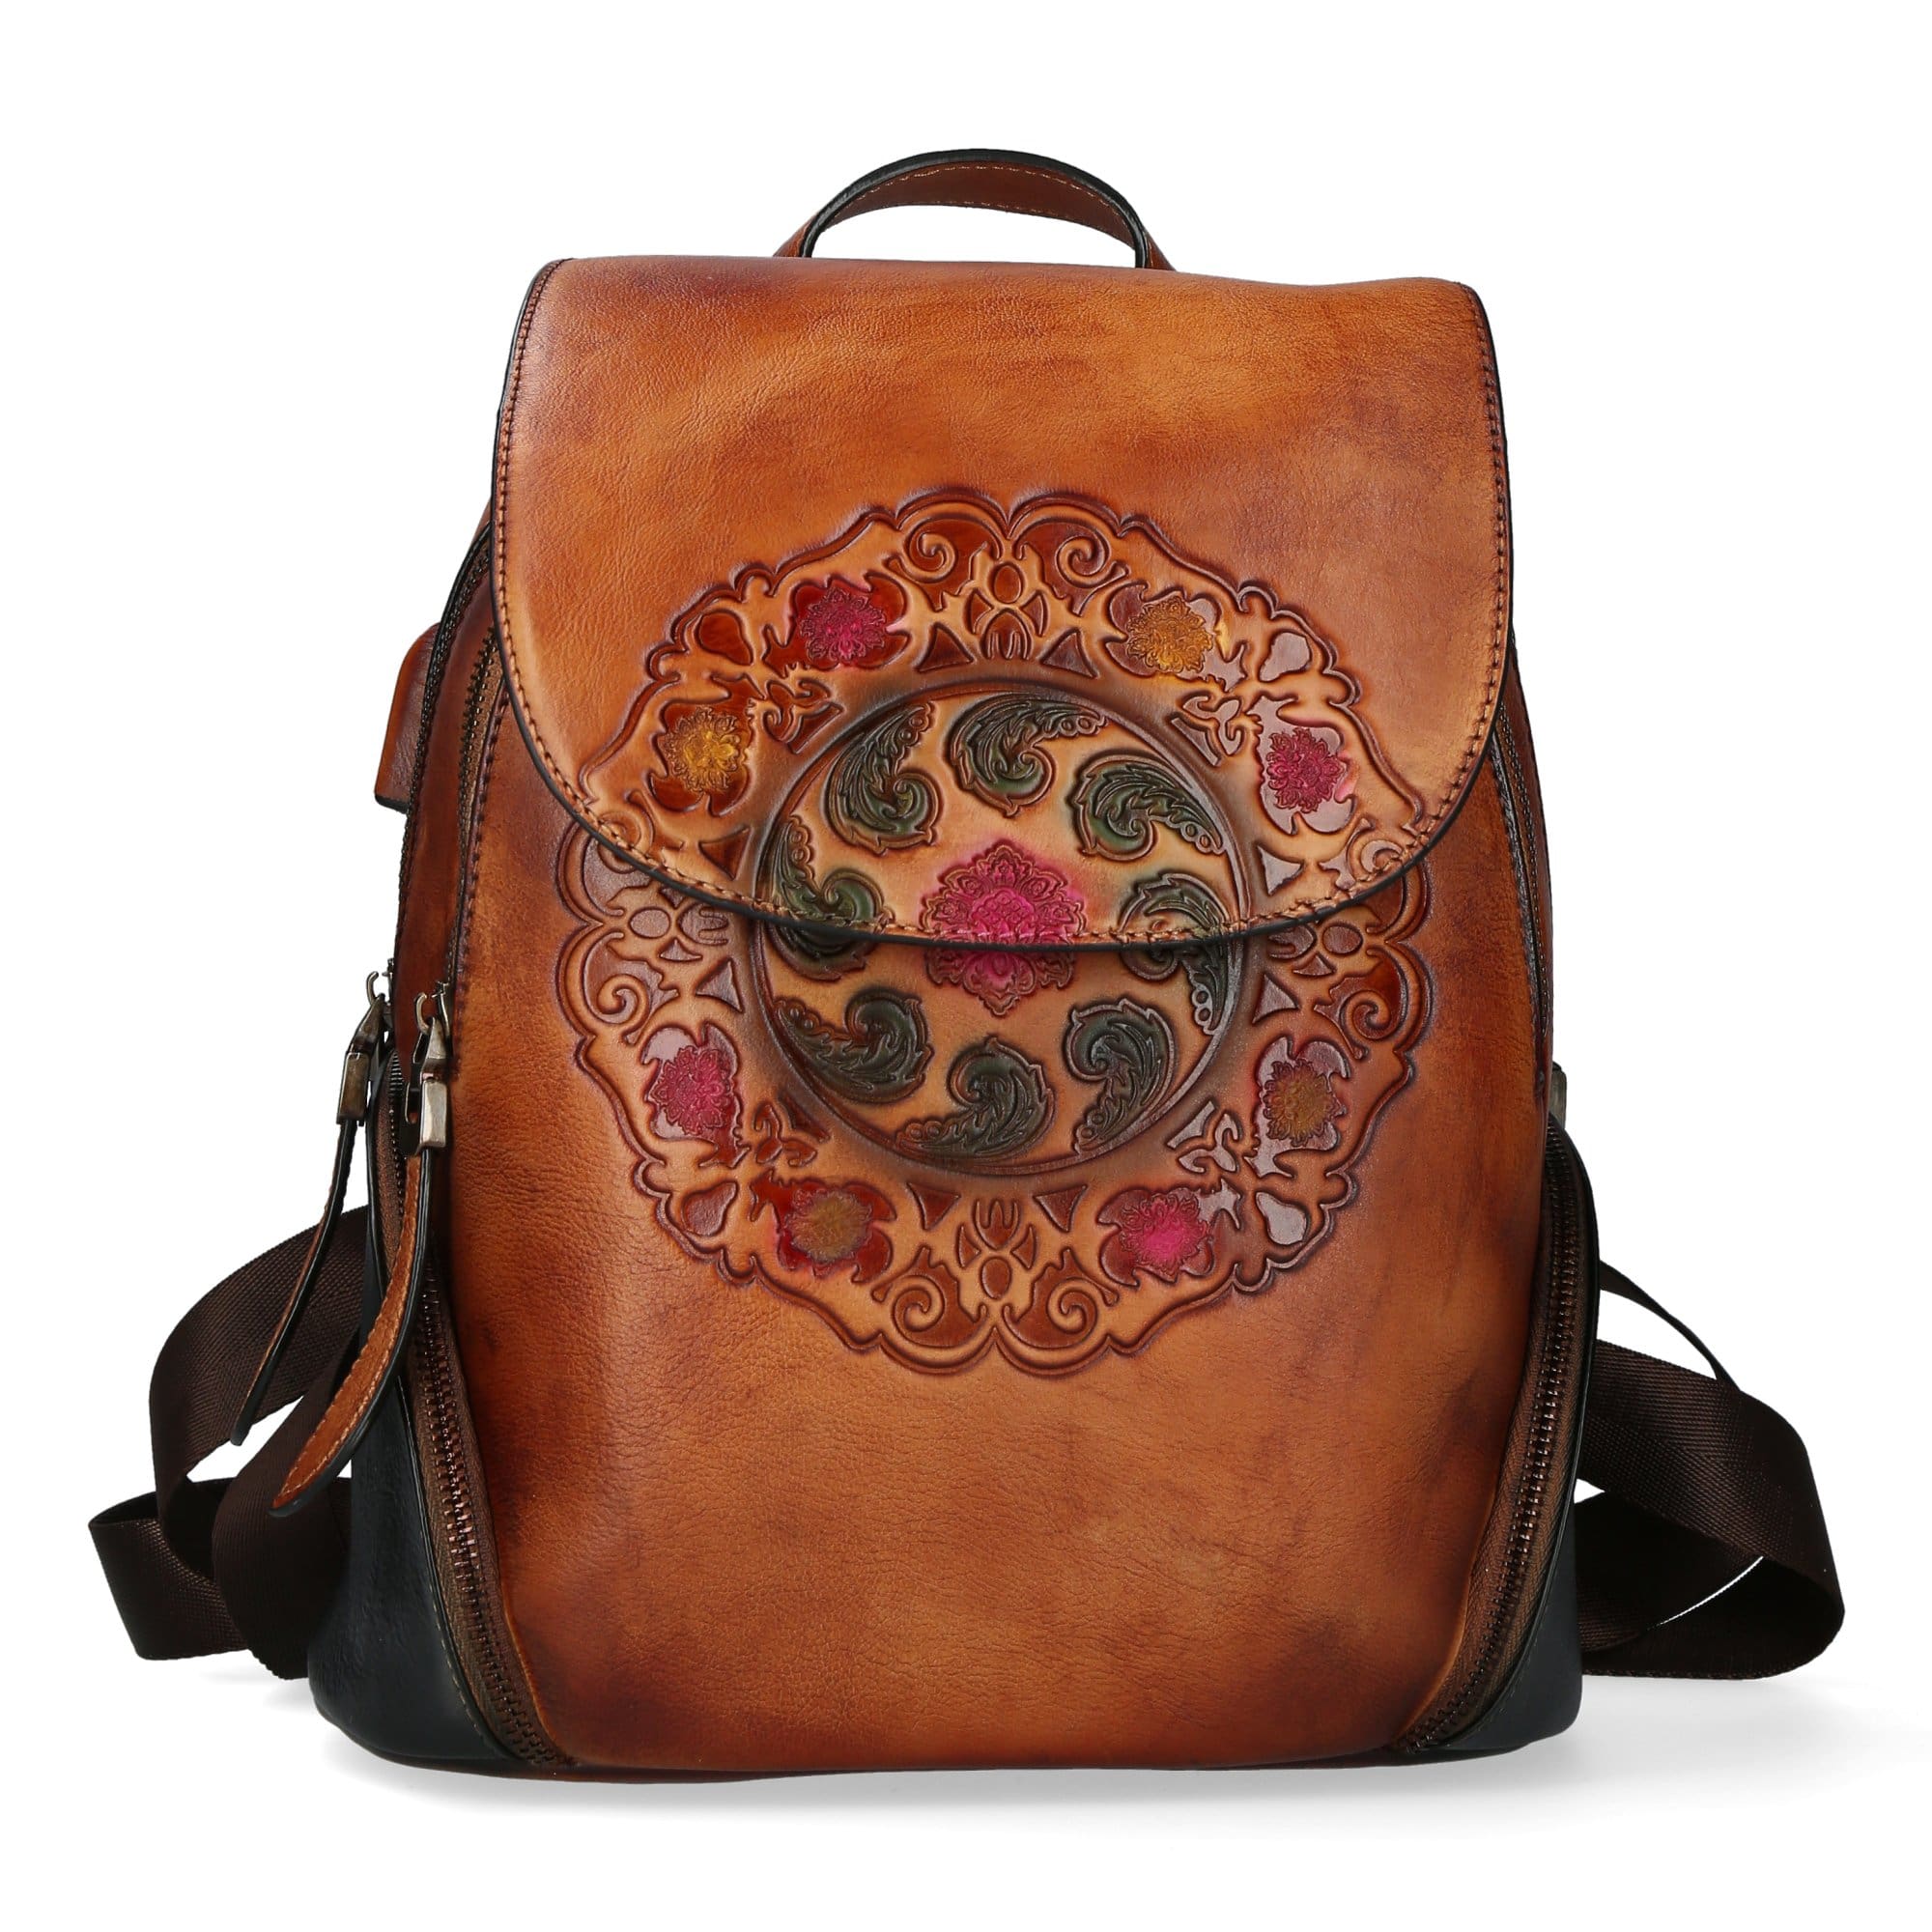 Dryades Leather Backpack - Brown - Torba